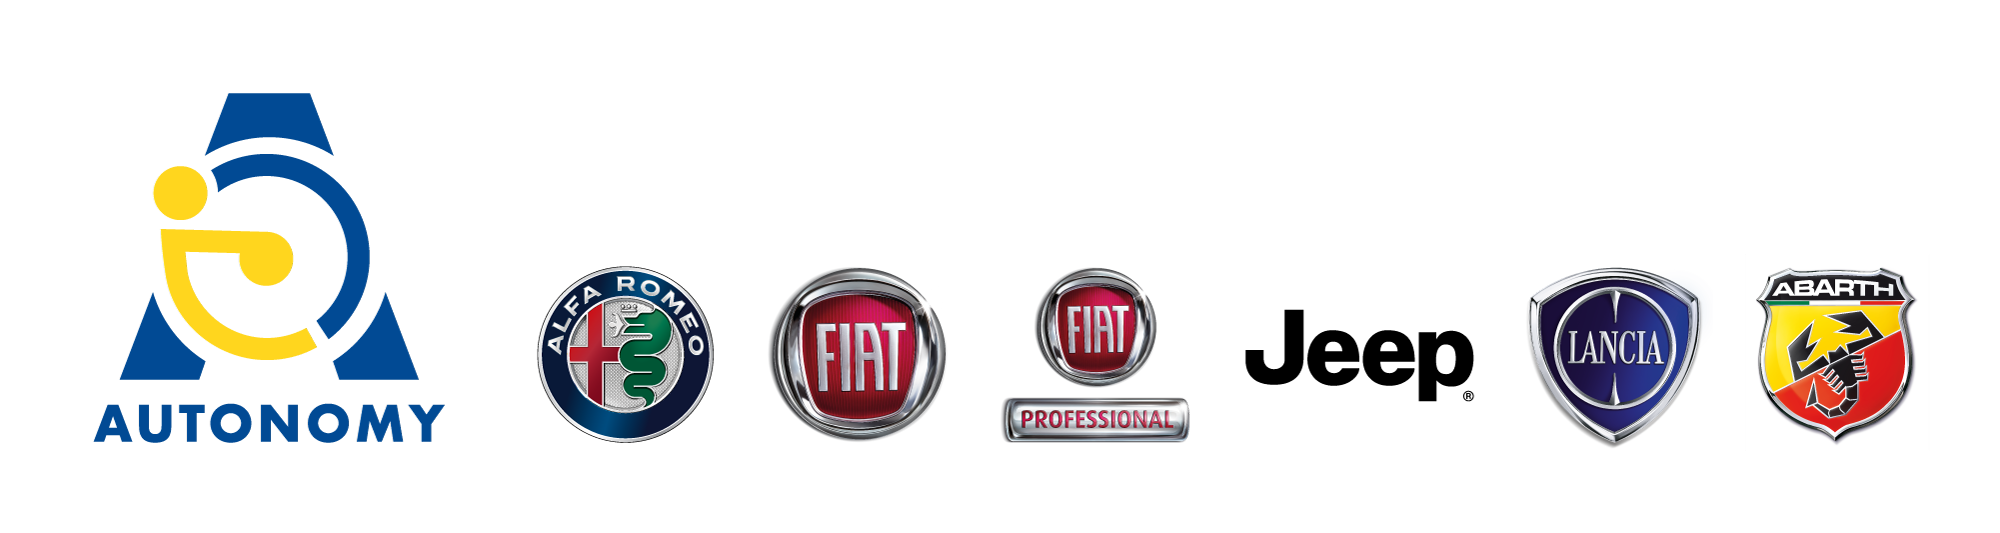 Kivi Fiat Autonomy